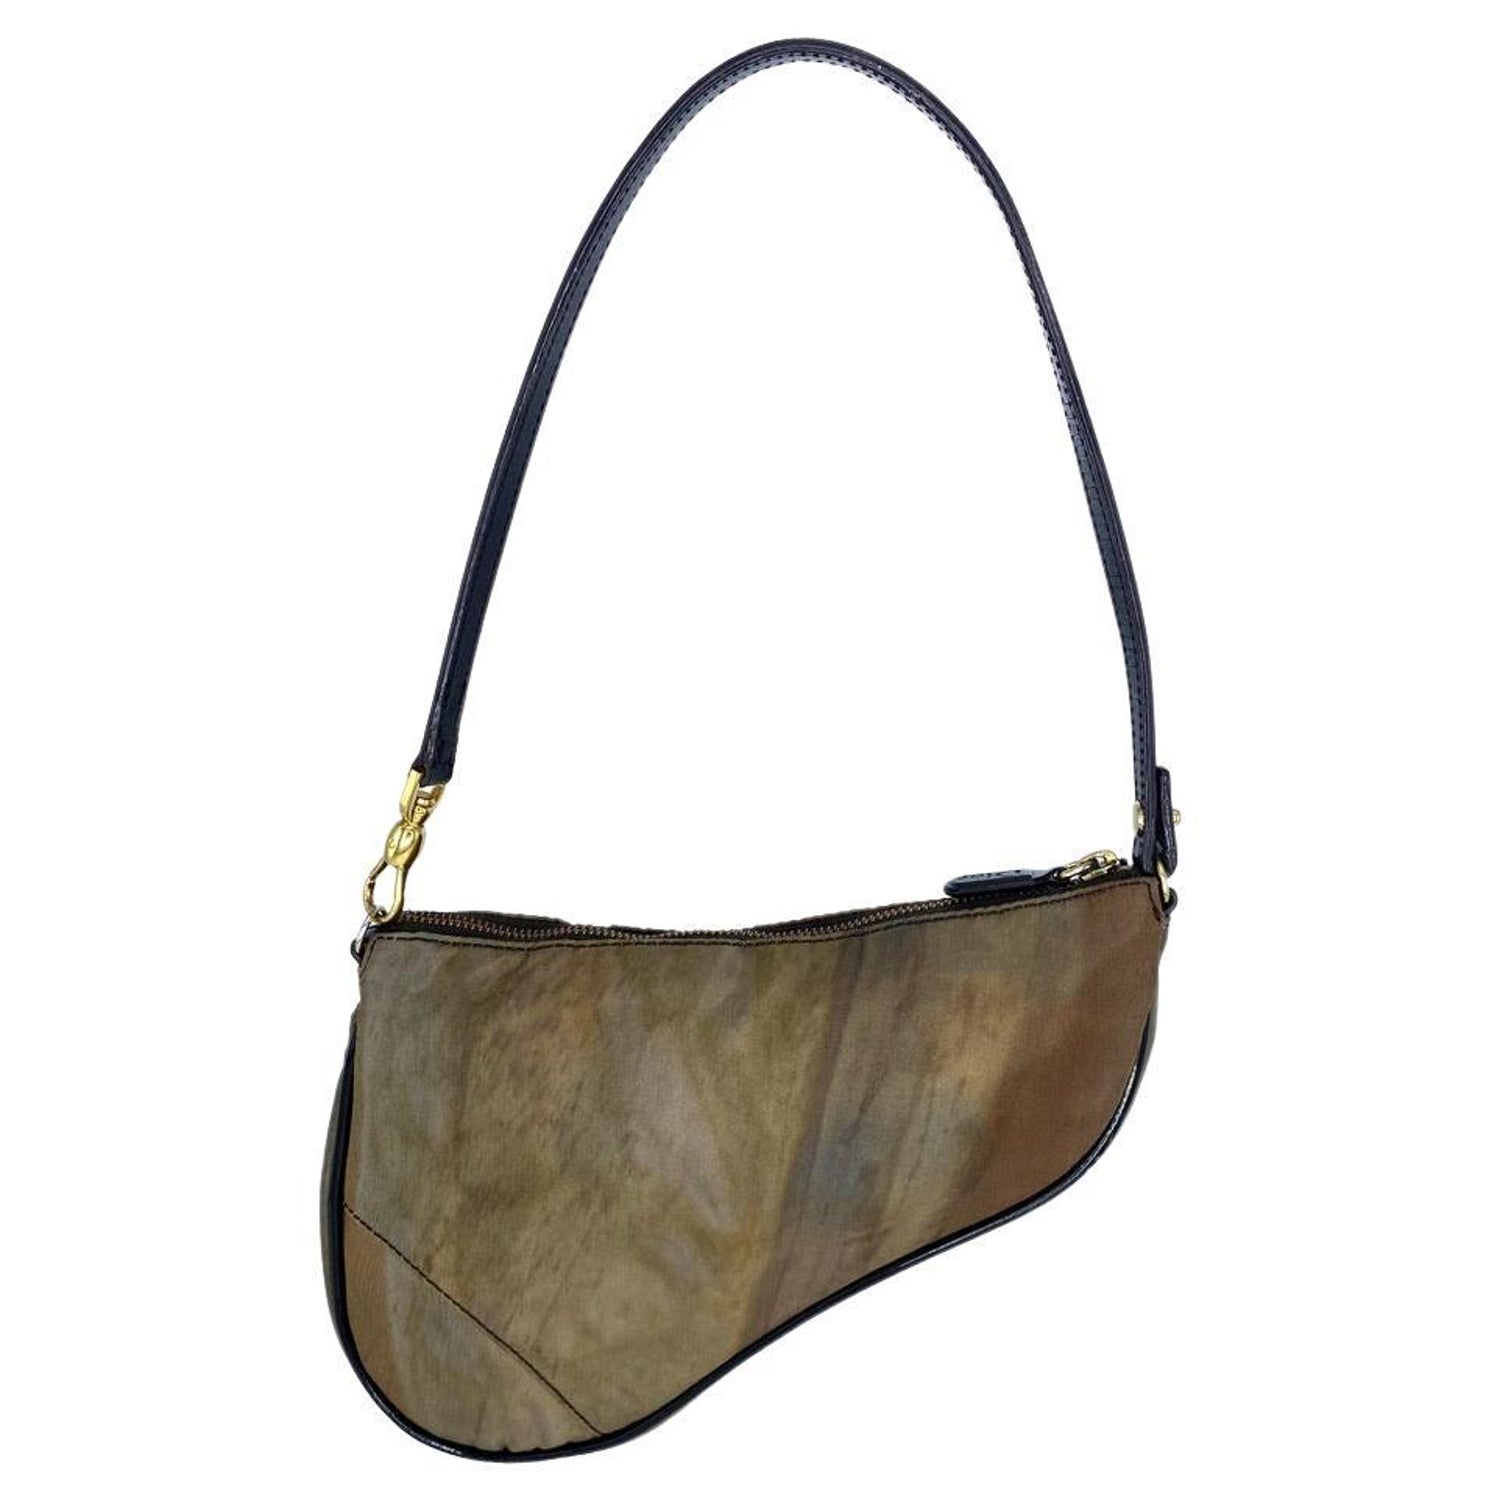 Golden Honey DE Strap for LV Handbags Wide Comfy Soft Nylon 